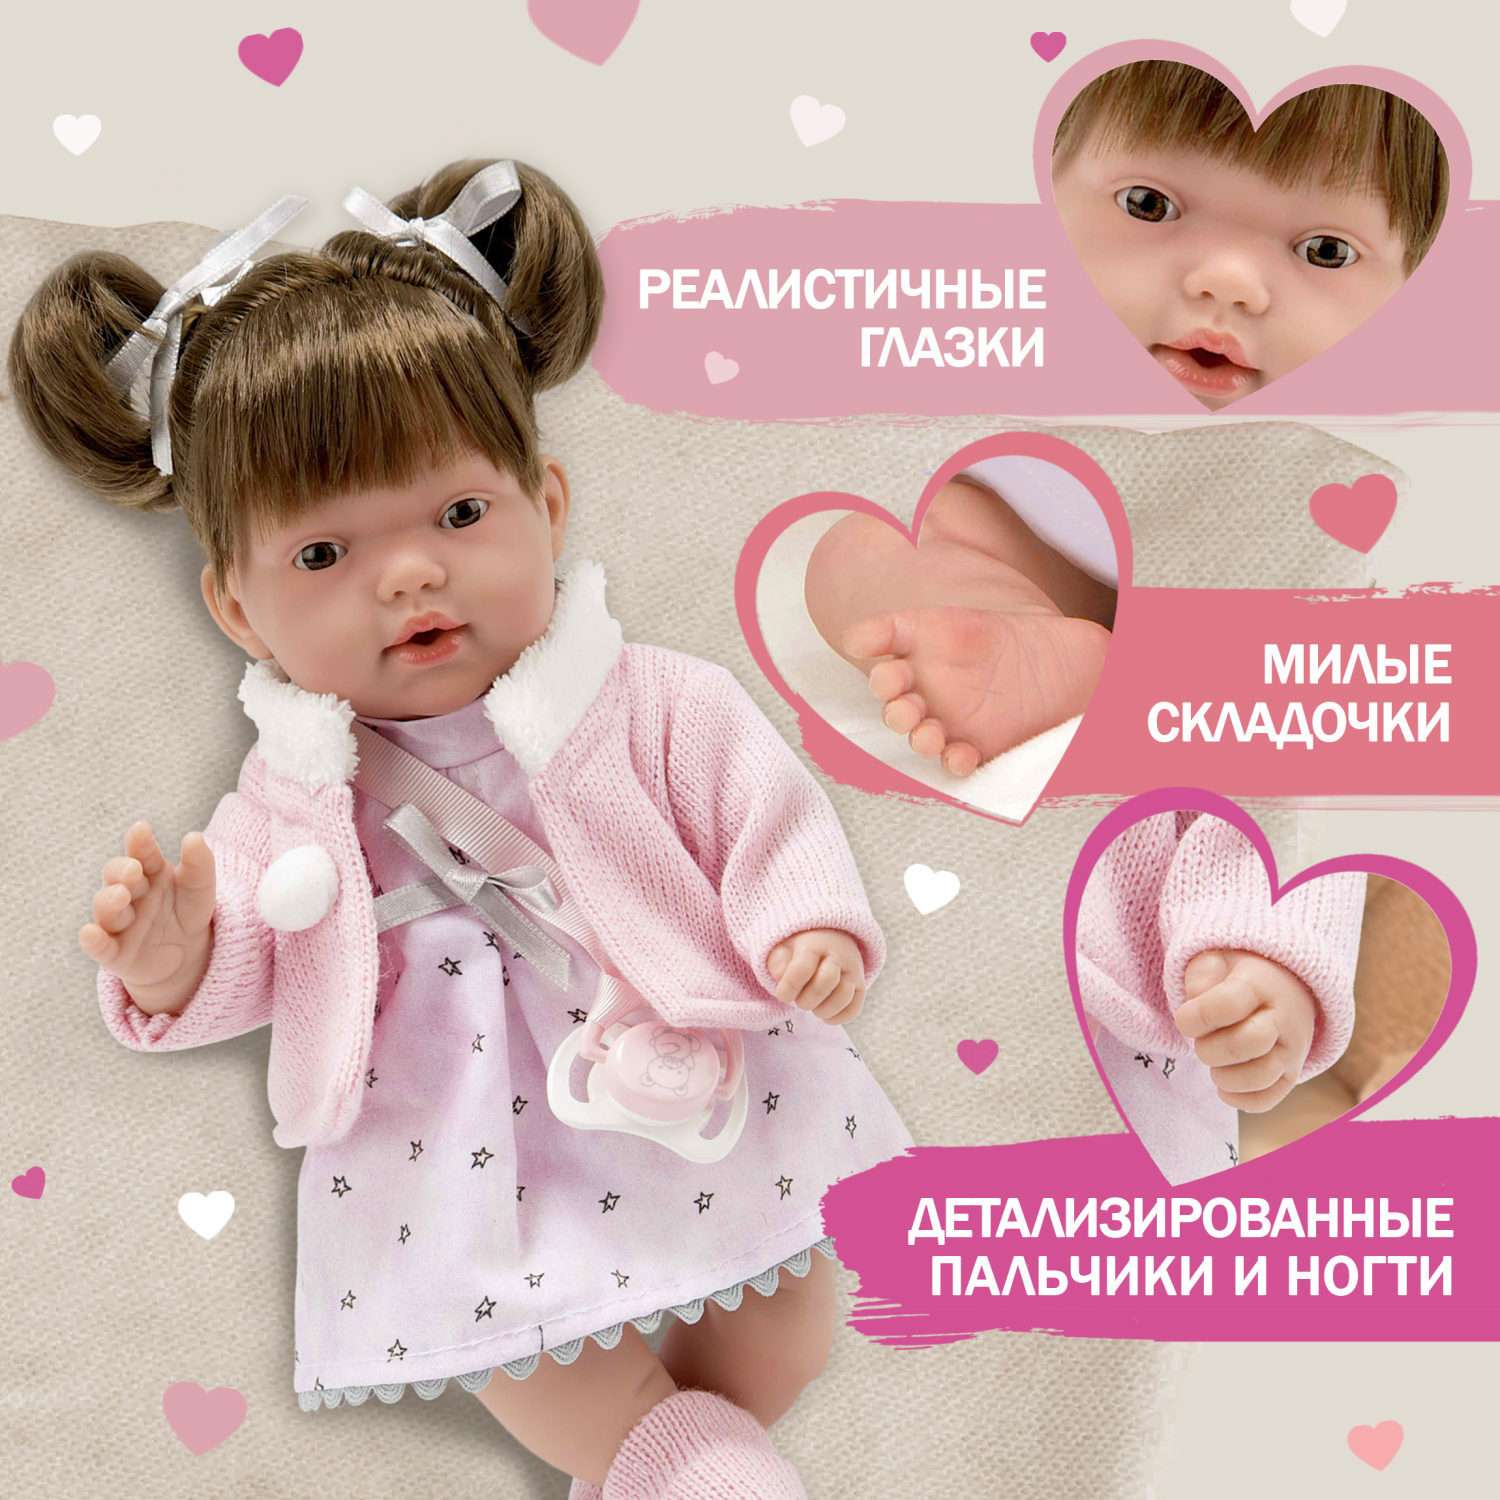 Кукла Arias Elegance hanne 28 см в розовой одежде Т22022 - фото 1